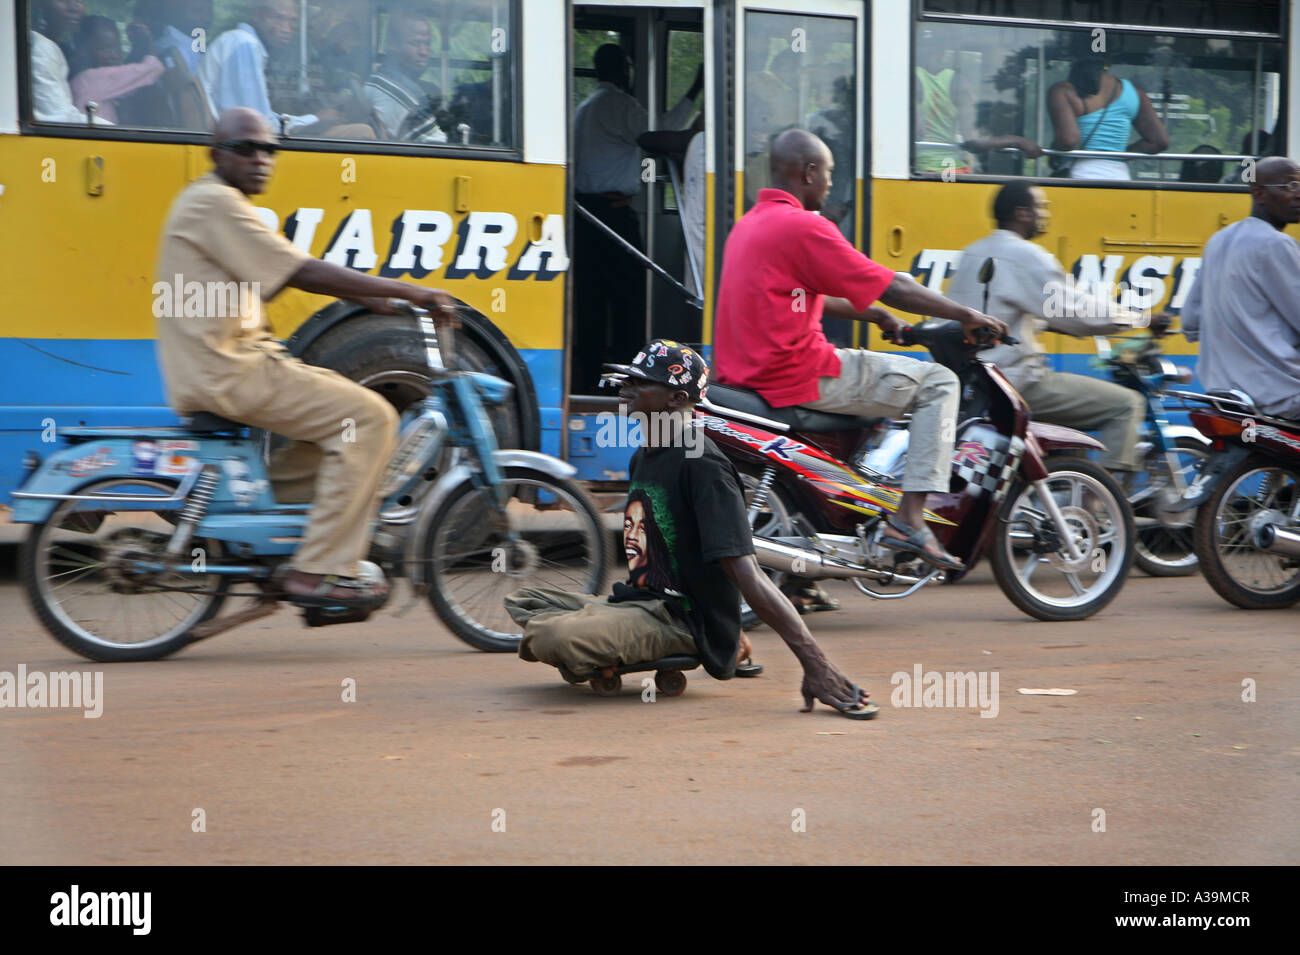 Un mendiant mobilité par la poliomyélite mendiant aux feux de circulation lorsque les voitures s'arrêter BAMAKO Mali, Afrique Banque D'Images